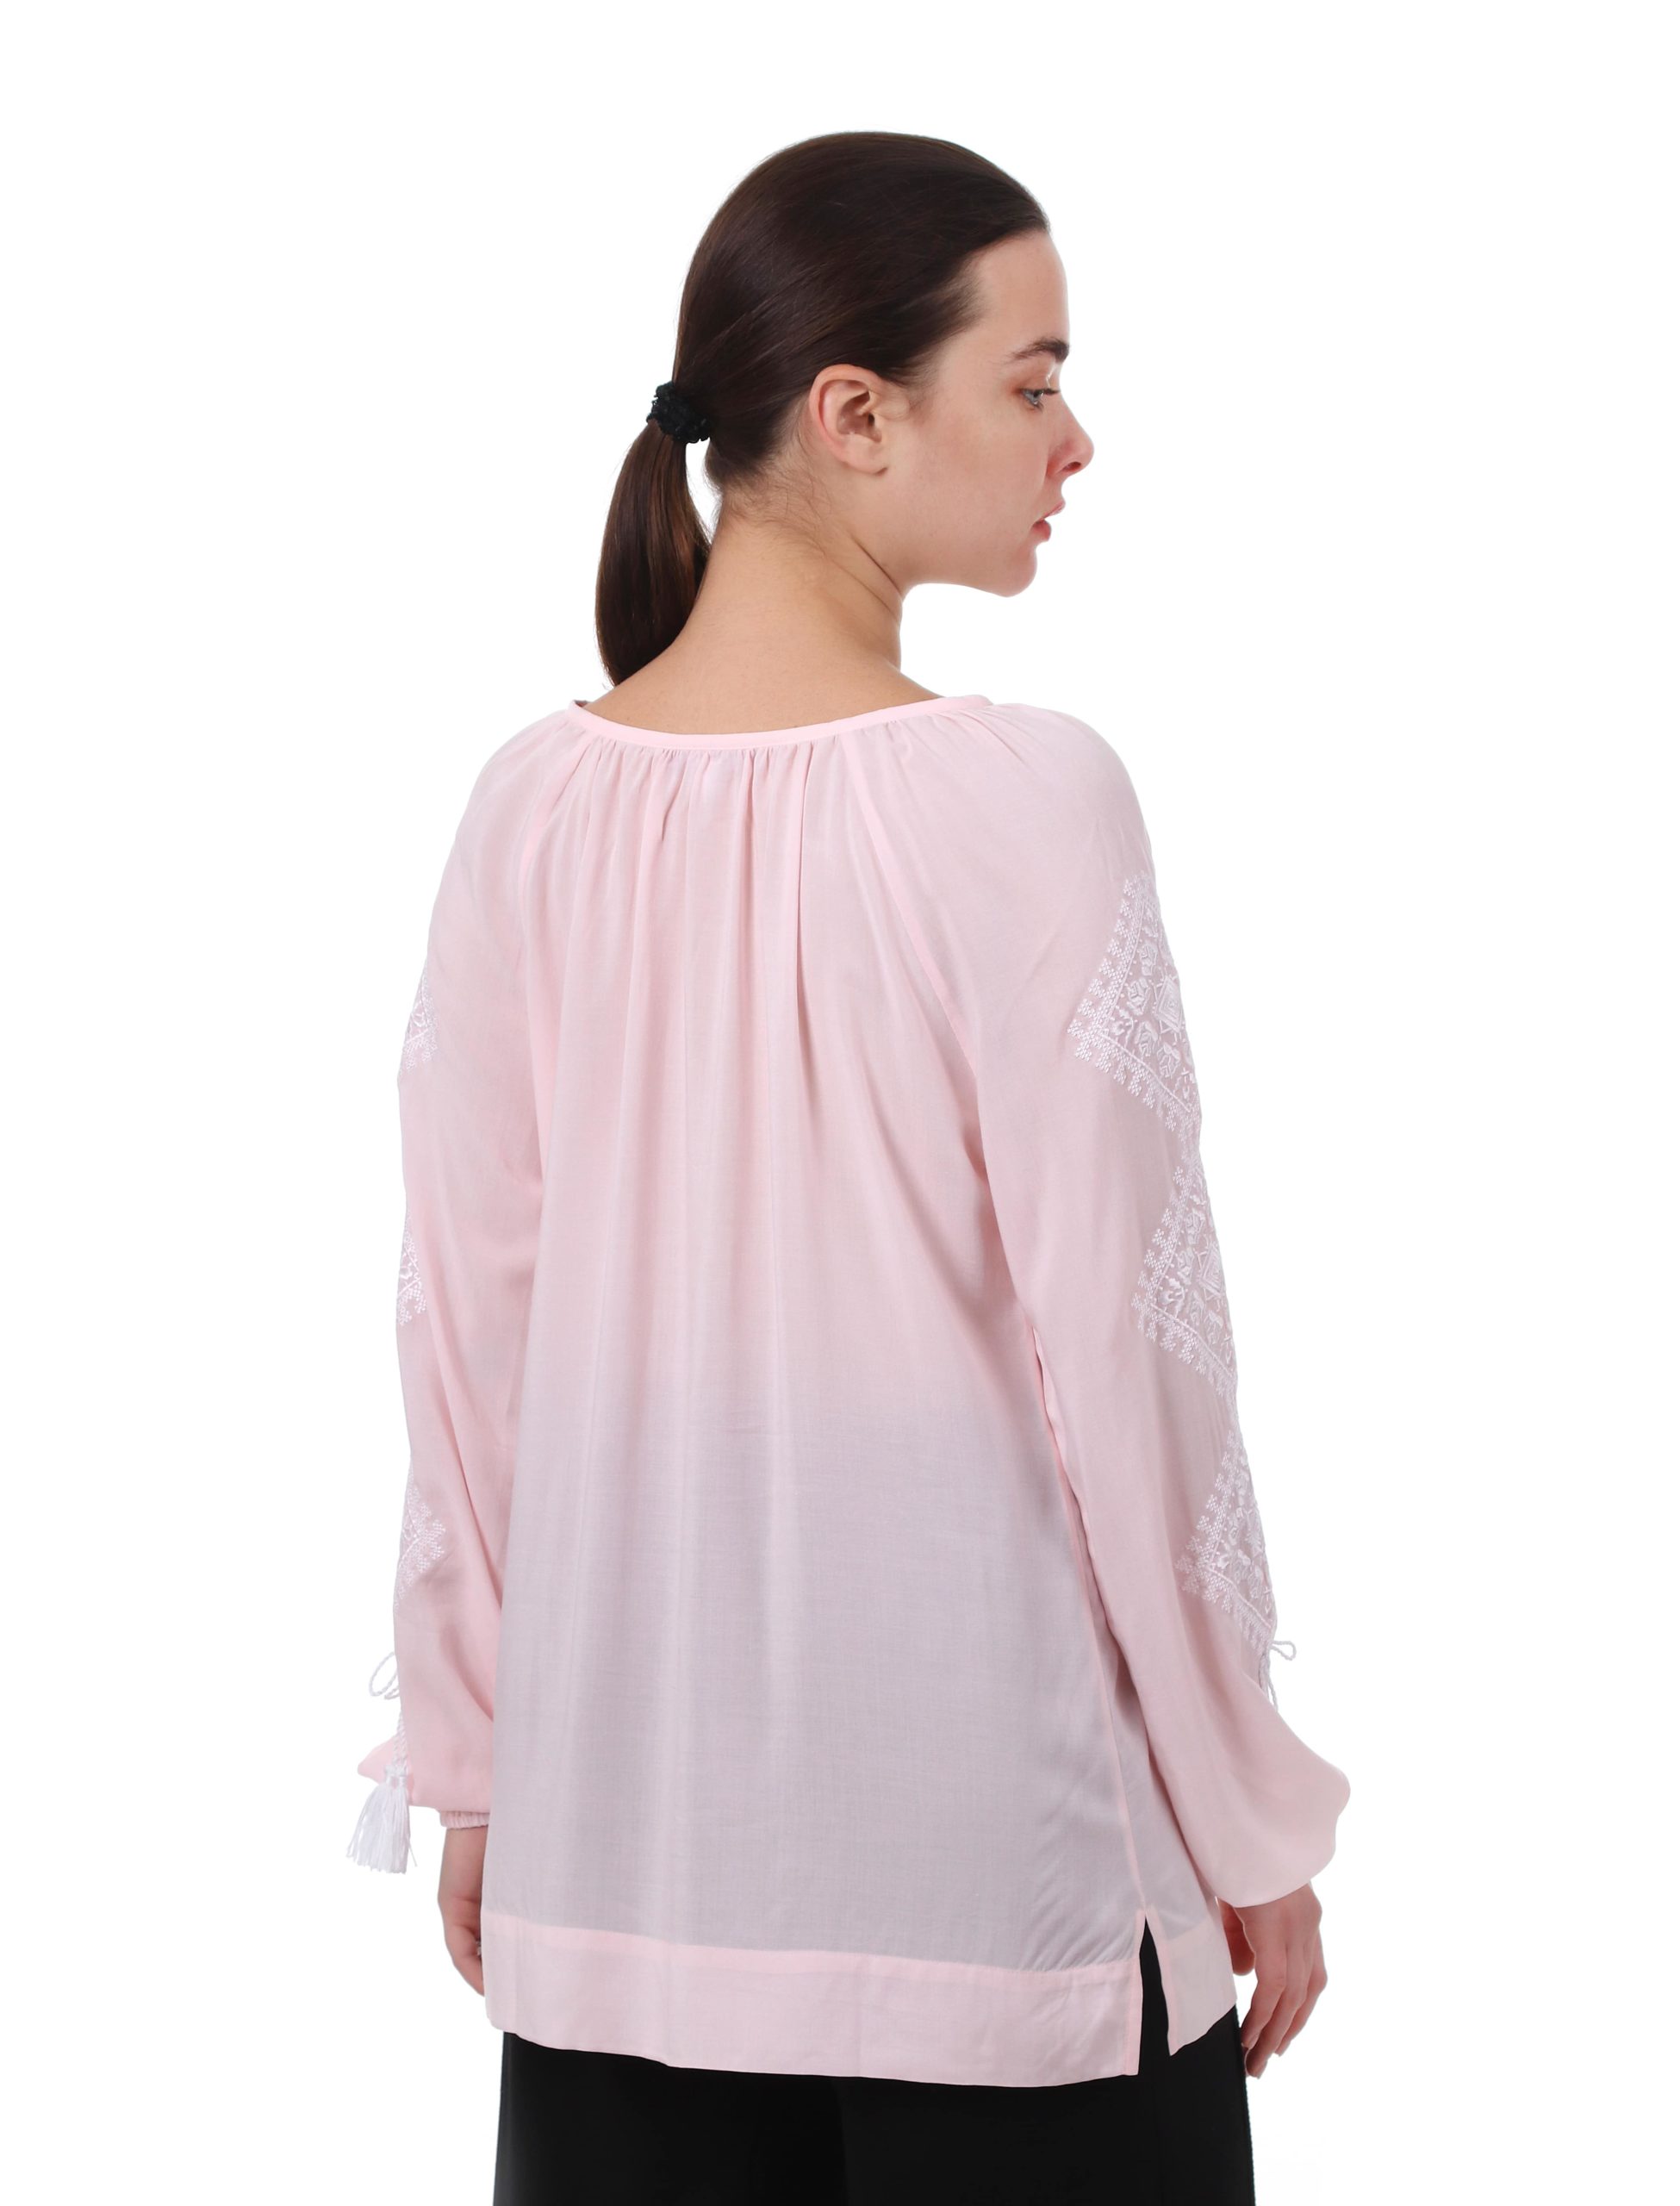 Блуза с вышивкой «Розы любви» (розовая)